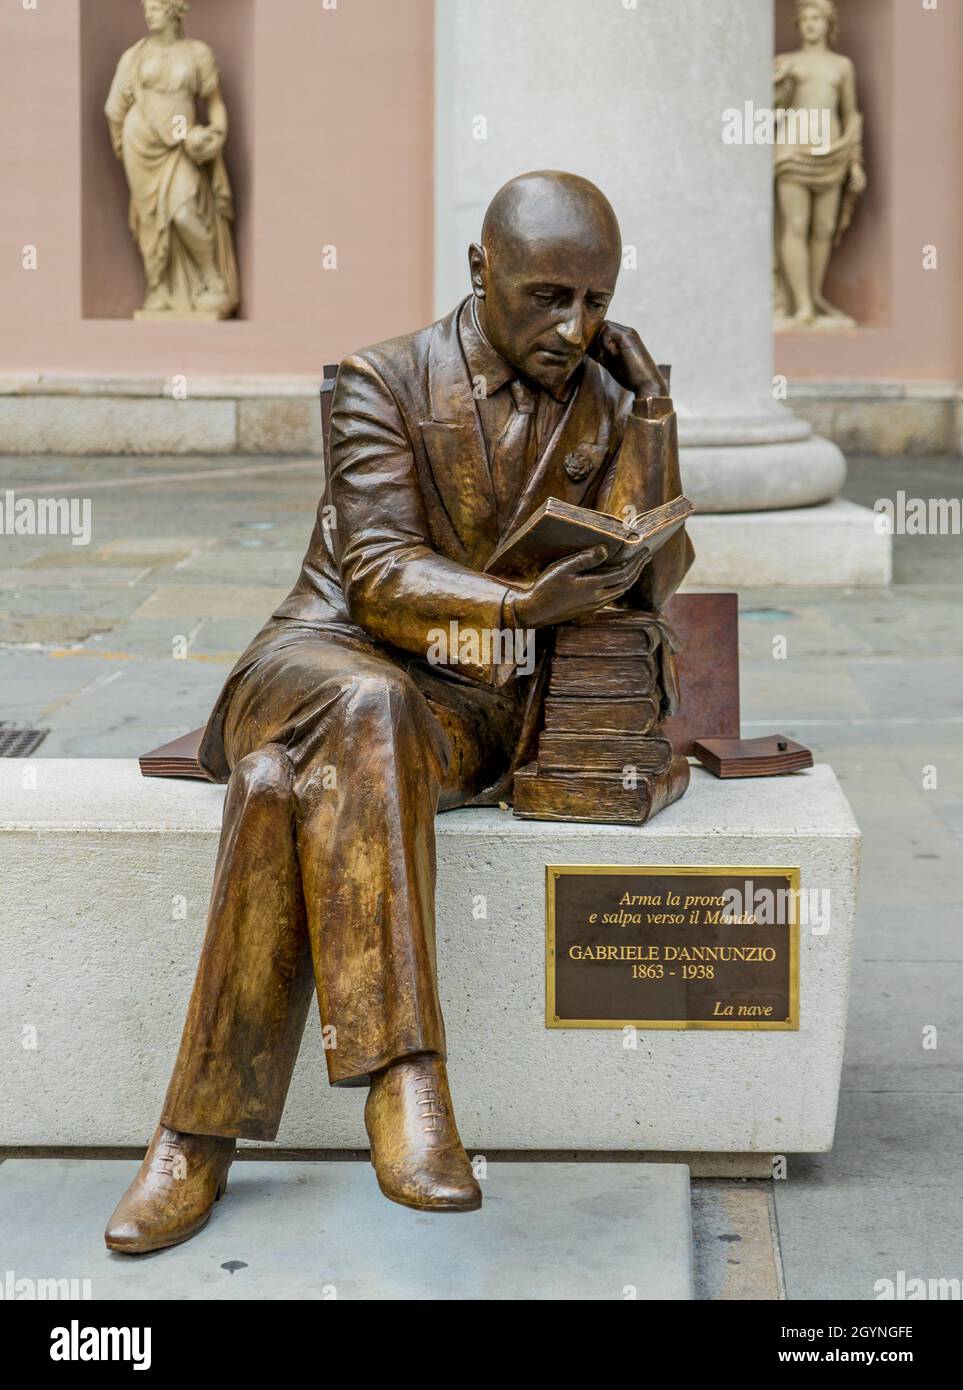 Bronze statue of Italian writer Gabriele D'Annunzio in piazza della Borsa,  Trieste, Italy Stock Photo - Alamy